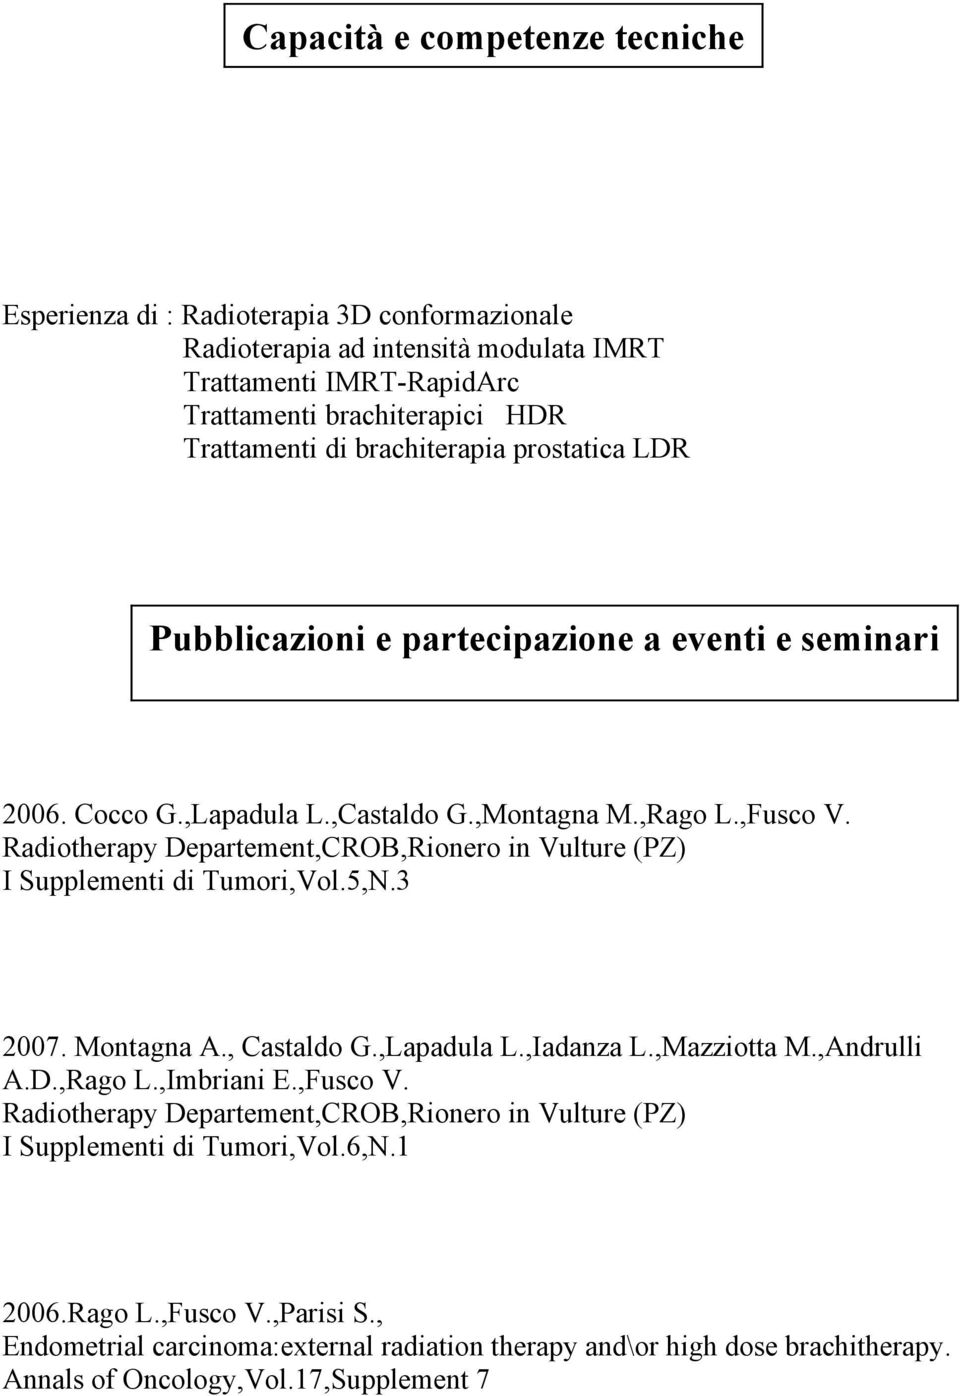 Radiotherapy Departement,CROB,Rionero in Vulture (PZ) I Supplementi di Tumori,Vol.5,N.3 2007. Montagna A., Castaldo G.,Lapadula L.,Iadanza L.,Mazziotta M.,Andrulli A.D.,Rago L.,Imbriani E.